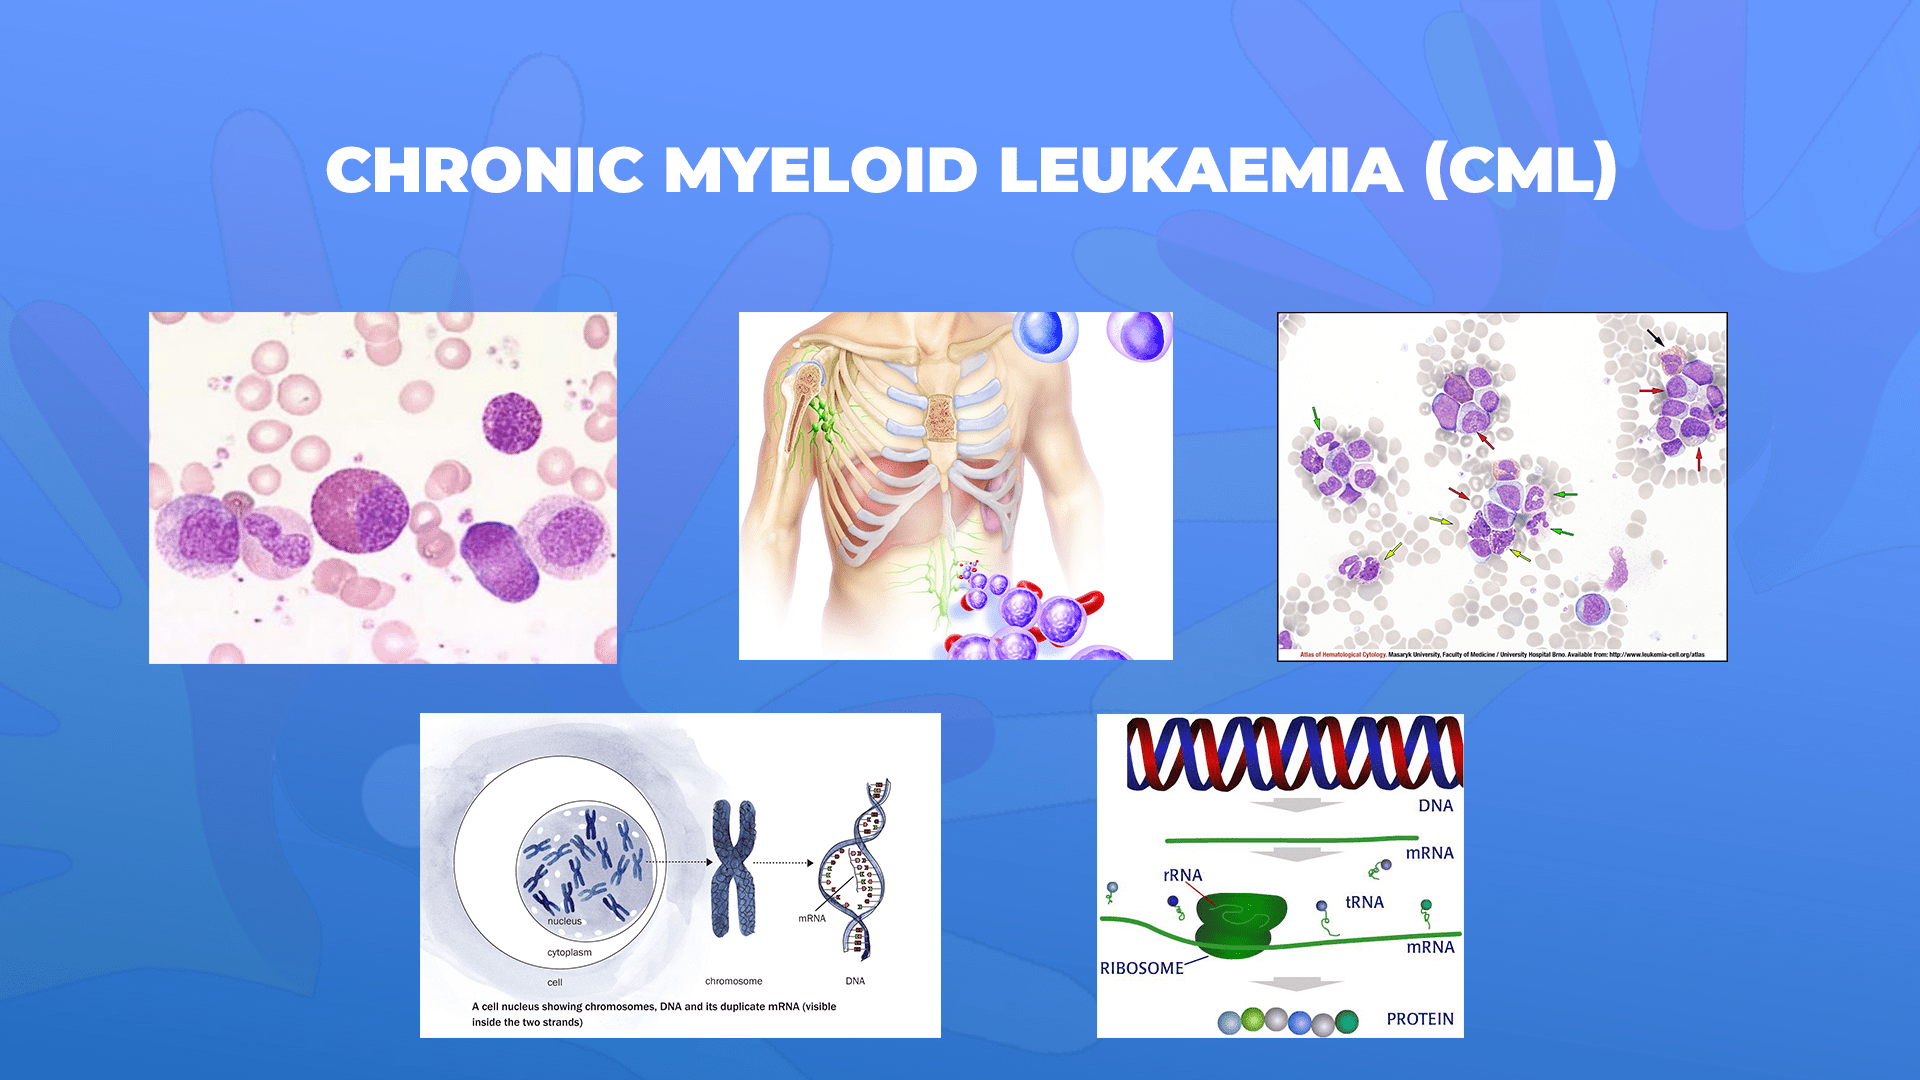 Ги запознаваме ретките болести: Хронична миелоидна леукемија-Chronic myeloid leukaemia (CML)